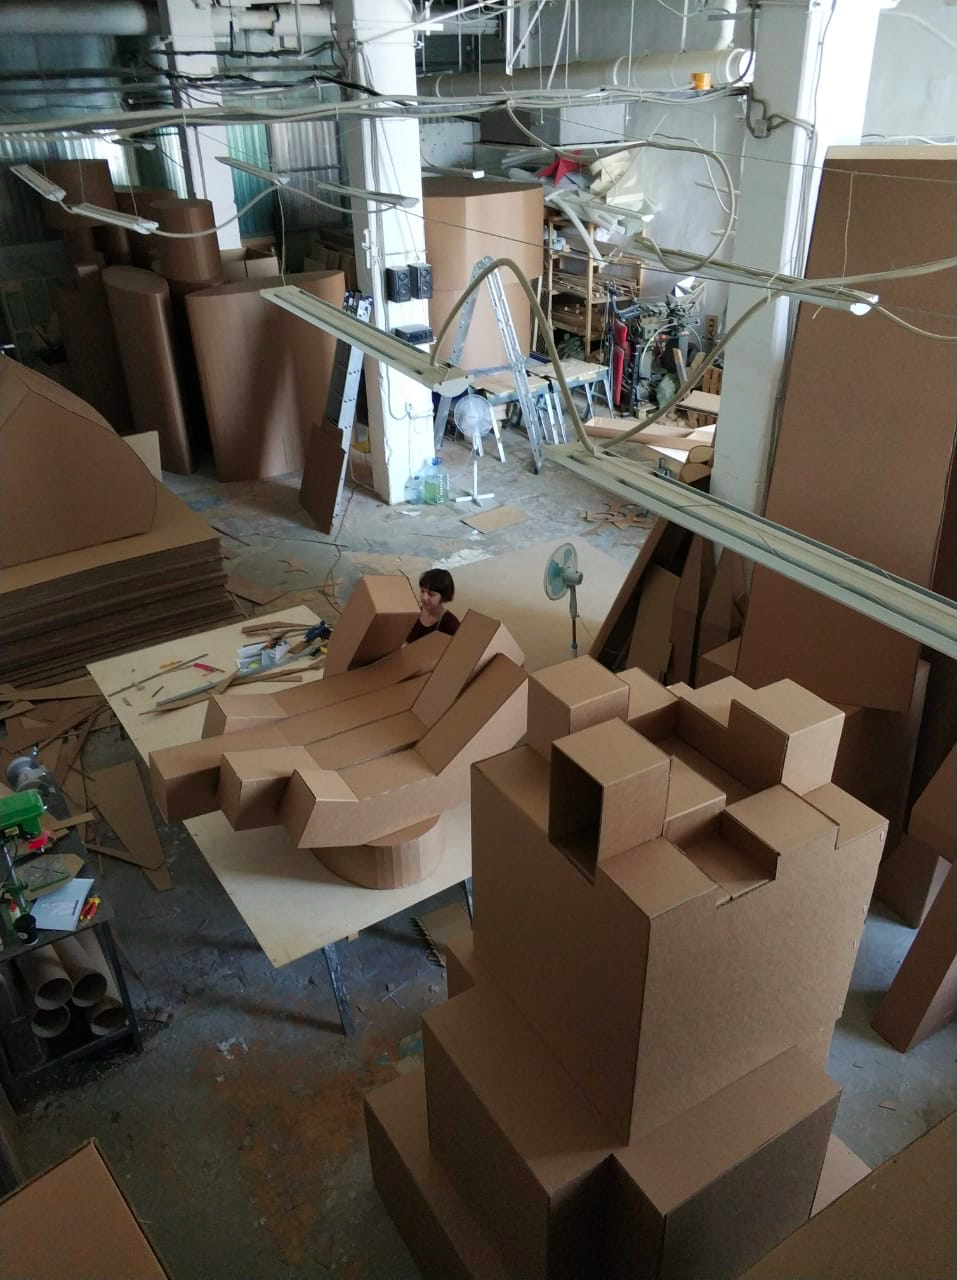 Пятиметровое оригами, или Как построить футуристический город из картона - 4